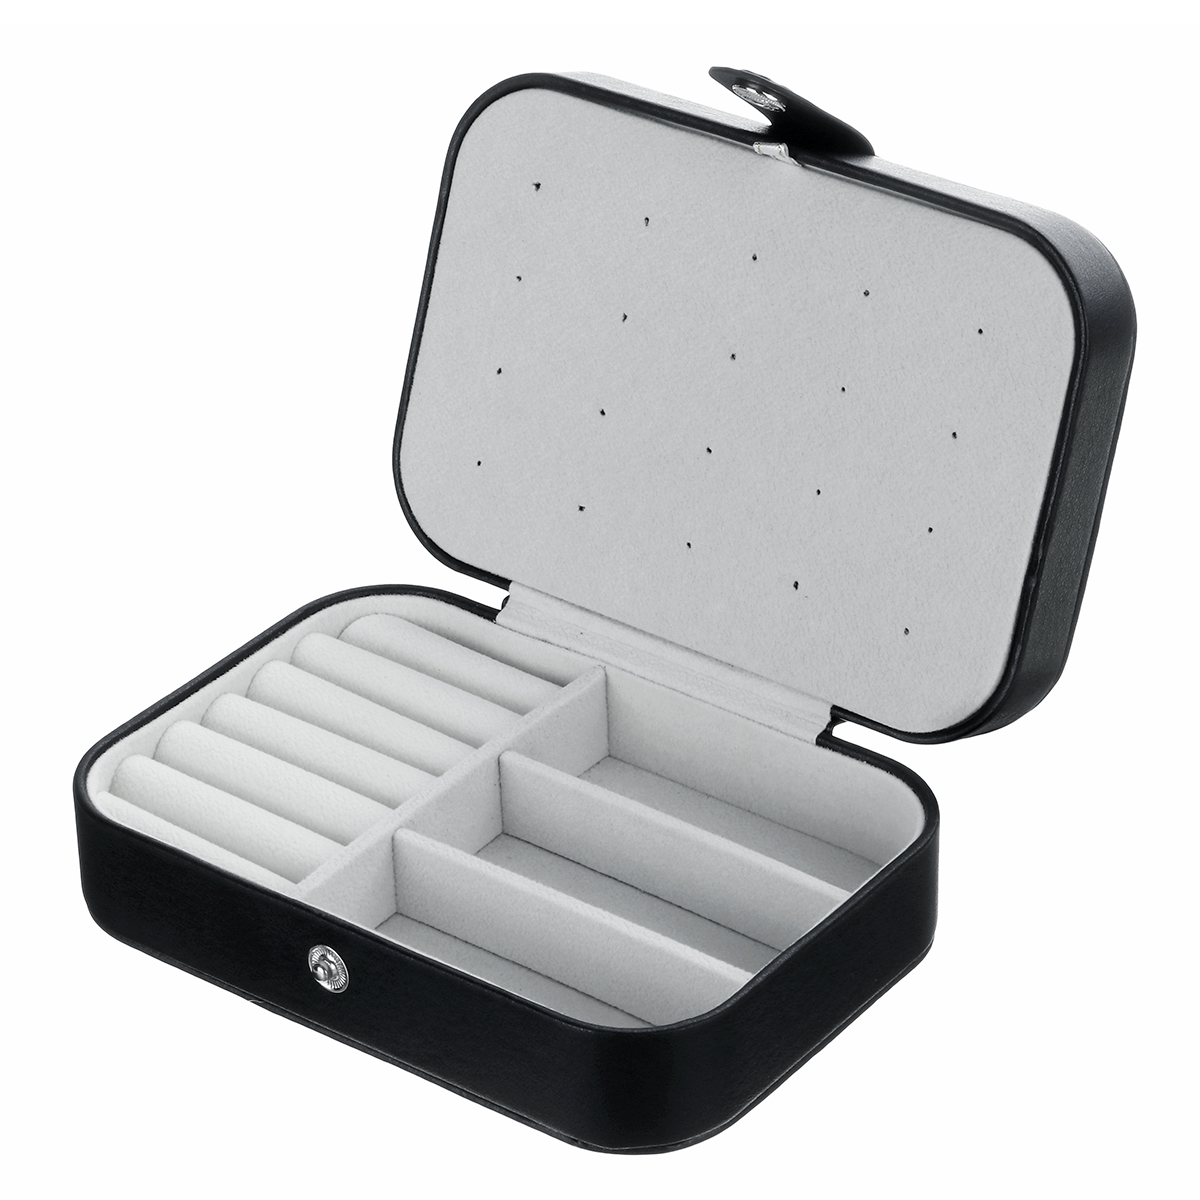 Travel-Portable-Leather-Jewelry-Watch-Storage-Watch-Box-Case-Organizer-1672485-7